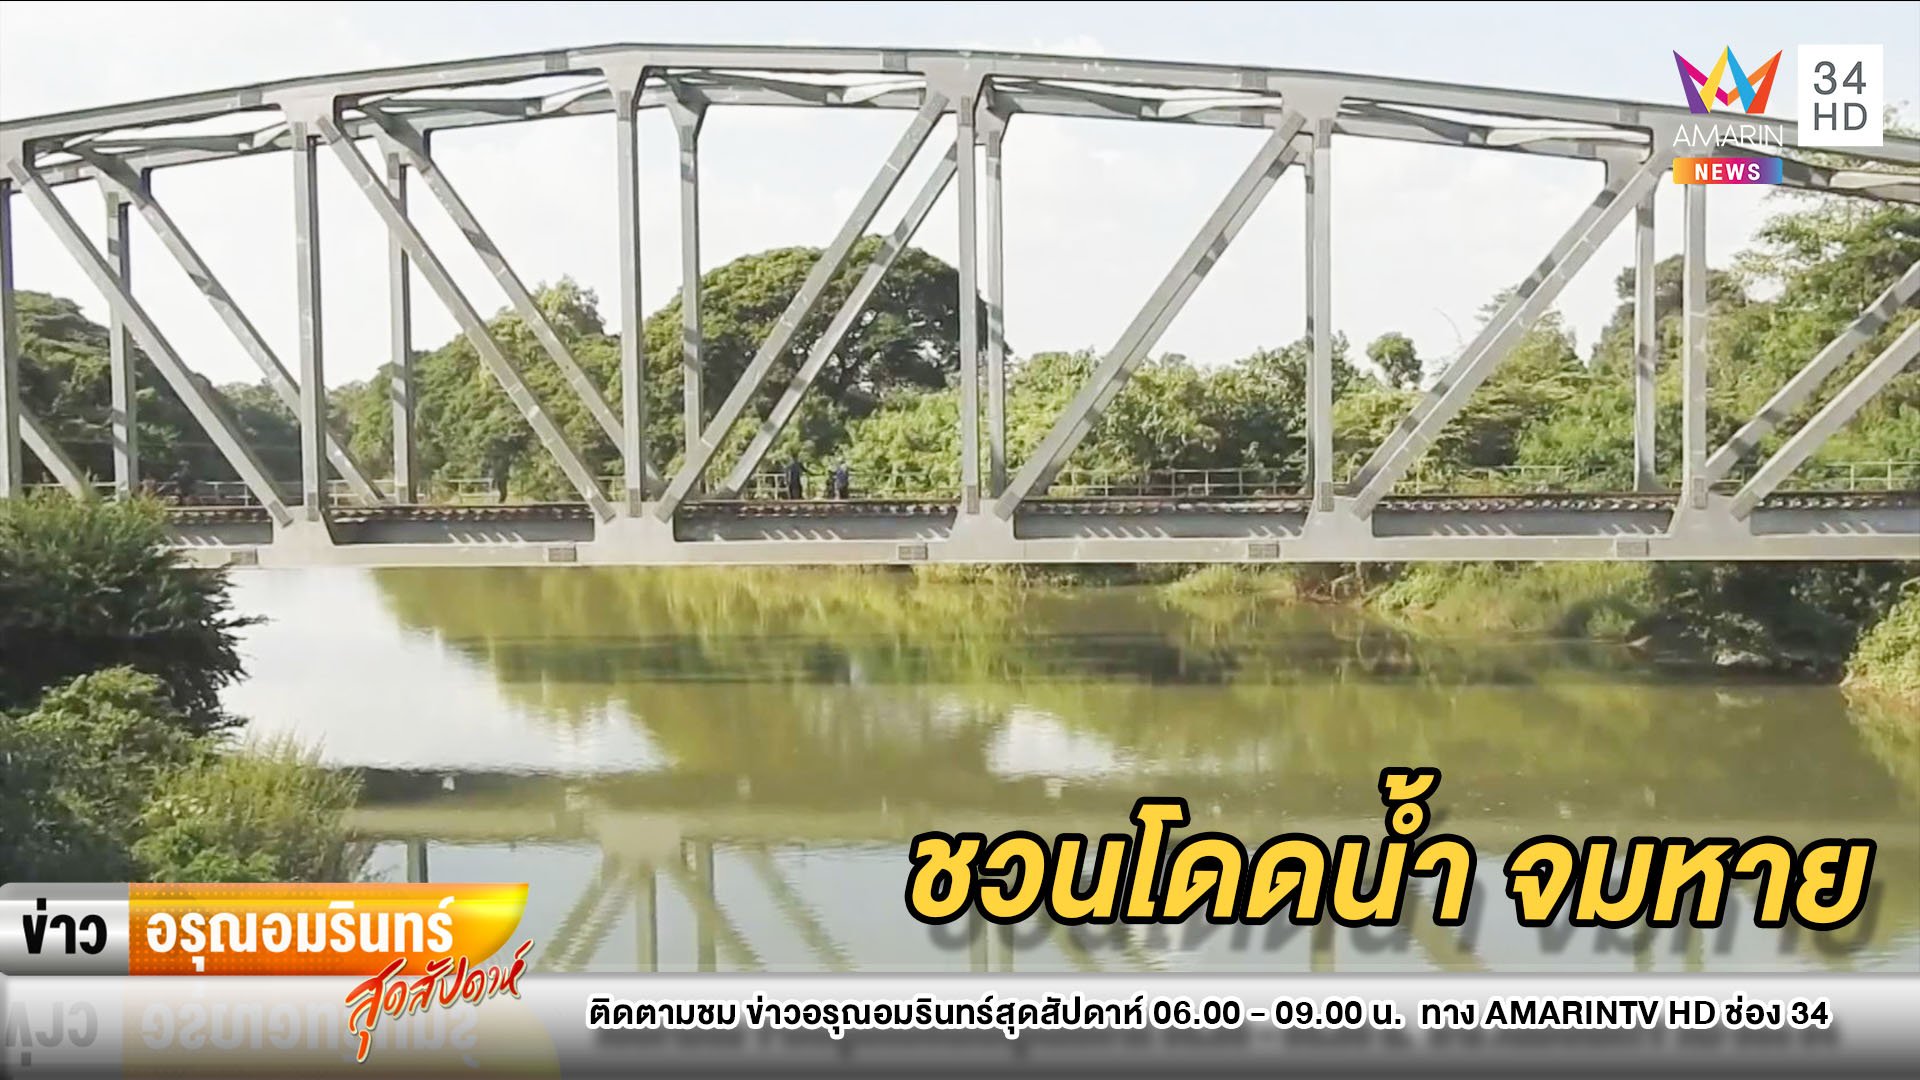 แก๊งเพื่อนวัย 15 ชวนโดดเล่นน้ำสะพาน พลัดจมหาย–พ่อร่ำไห้ใจจะขาด | ข่าวอรุณอมรินทร์ | 15 พ.ย. 63 | AMARIN TVHD34